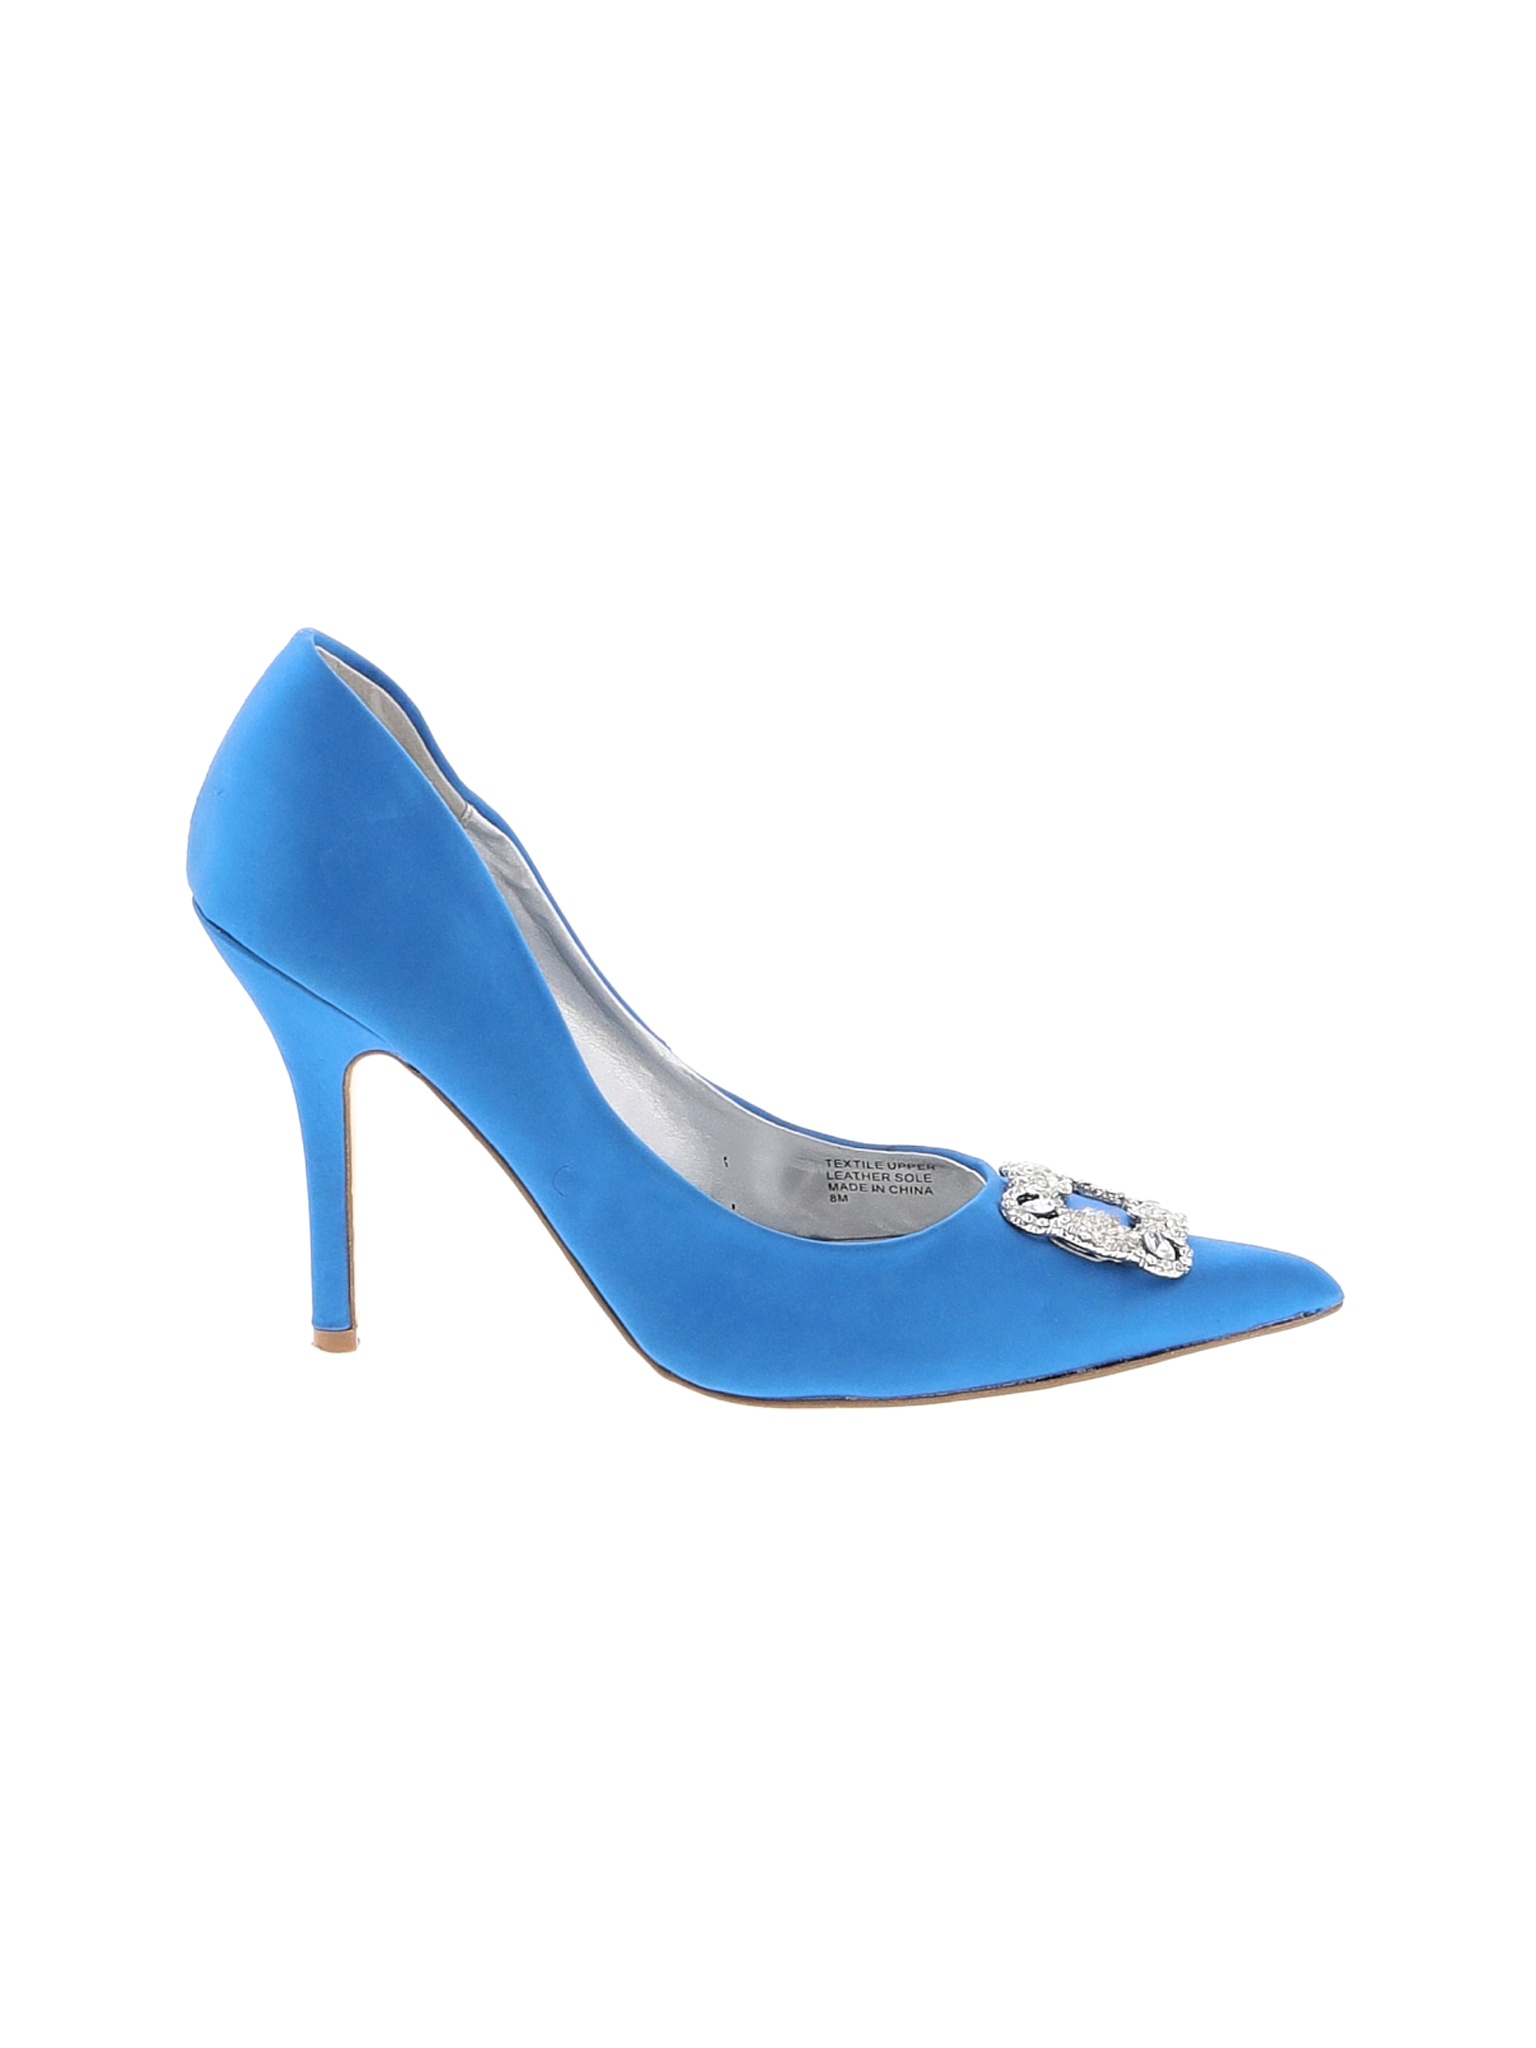 Audrey Brooke Women Blue Heels US 8 | eBay